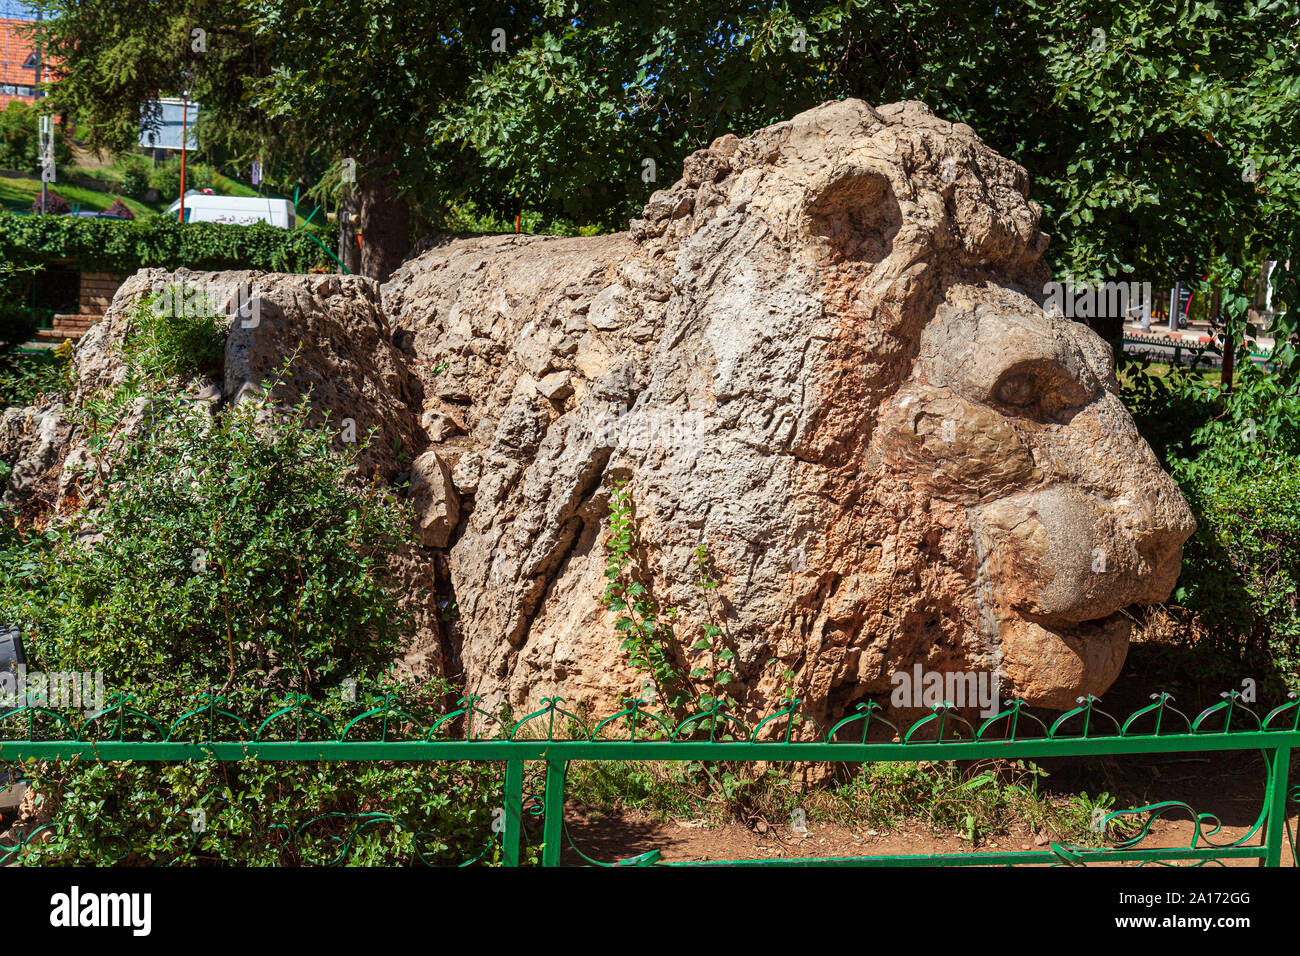 Le culte d'Ifrane est le lion de pierre qui se trouve sur une parcelle d'herbe près de l'Hôtel Chamonix Banque D'Images